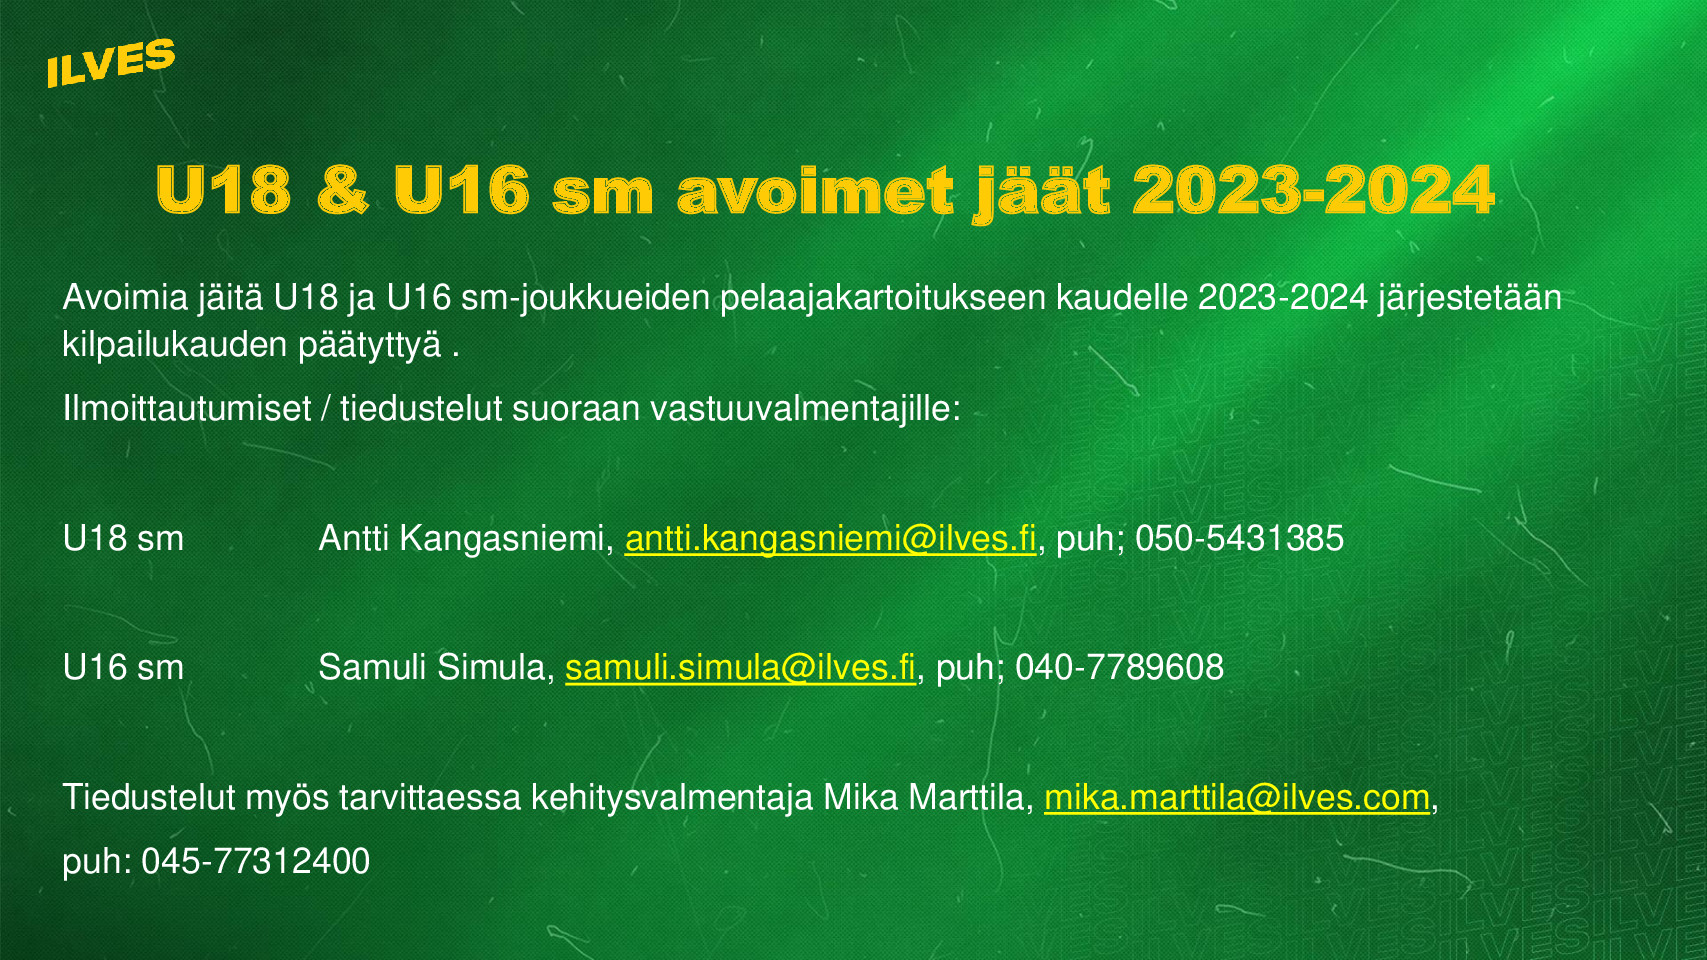 Ilves U18 & U16 SM avoimet jäät 2023-2024